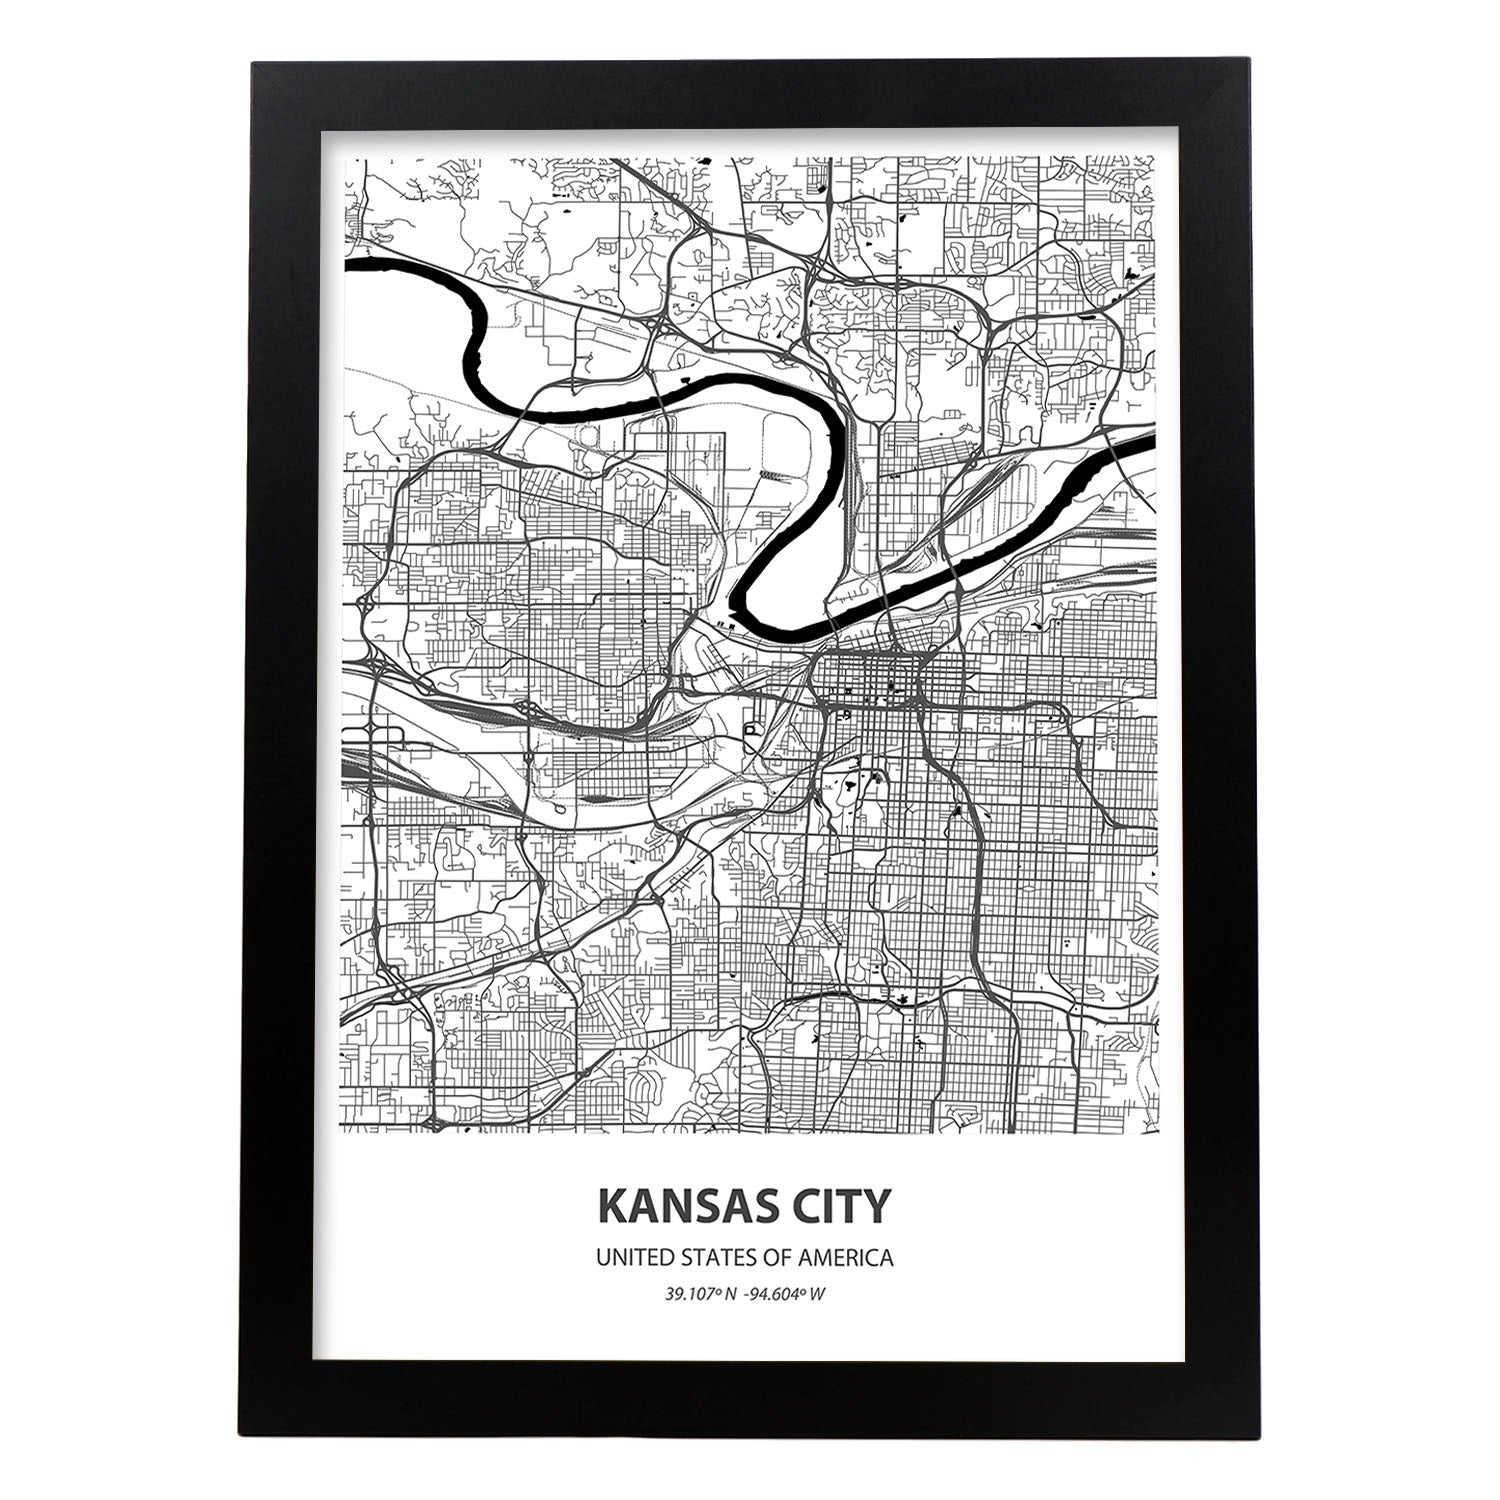 Poster con mapa de Kansas City - USA. Láminas de ciudades de Estados Unidos con mares y ríos en color negro.-Artwork-Nacnic-A4-Marco Negro-Nacnic Estudio SL